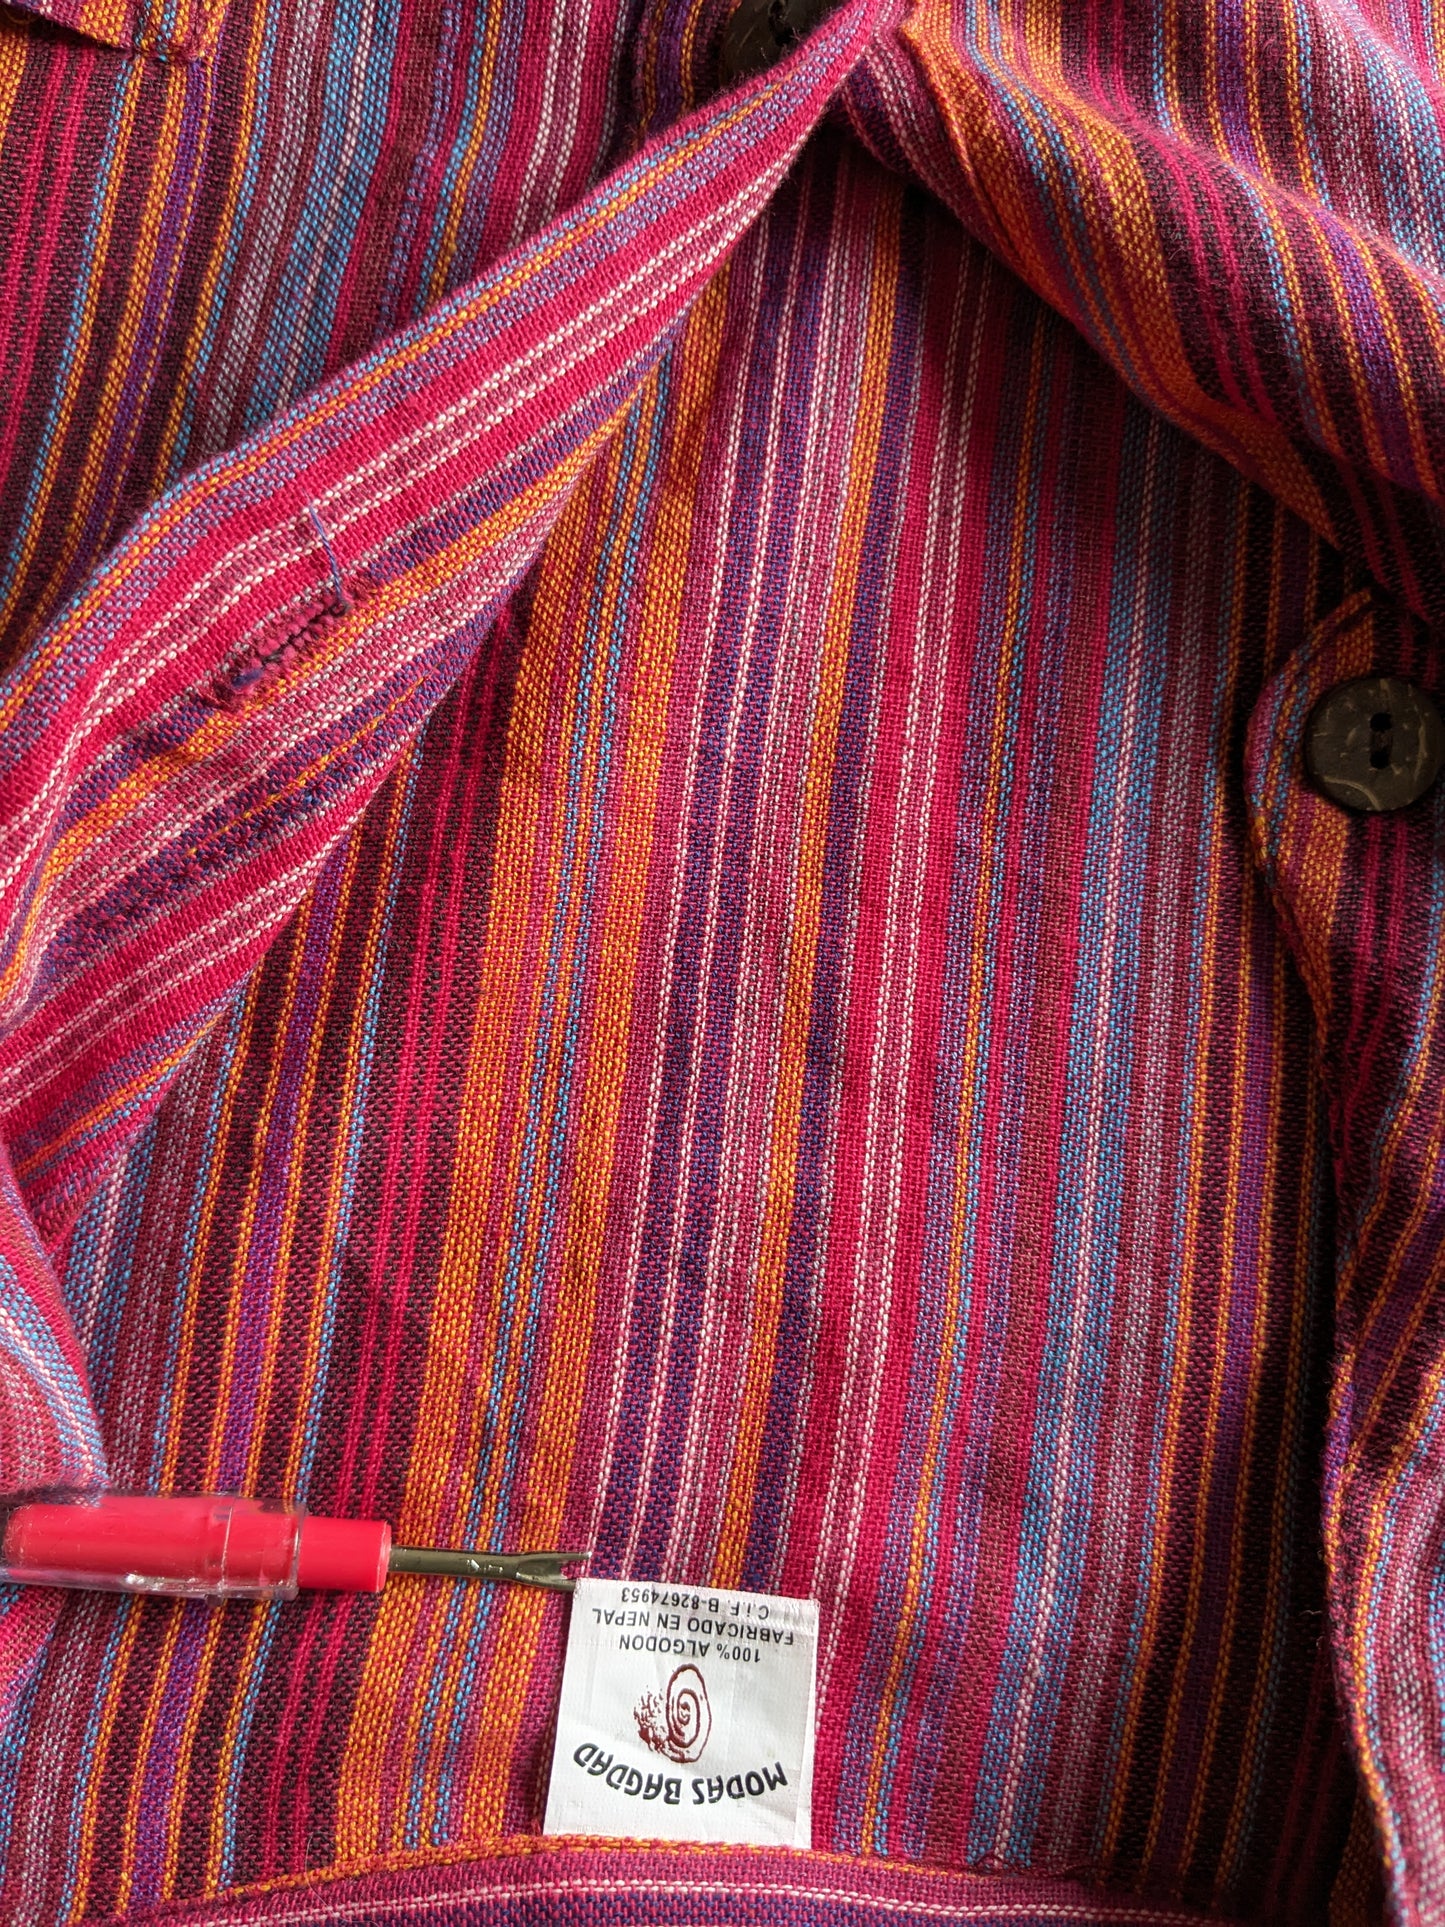 Vintage Modas Bagdad polotrui / overhemd met mao / opstaande / farmer kraag. Rood / gekleurd gestreept. Maat L.